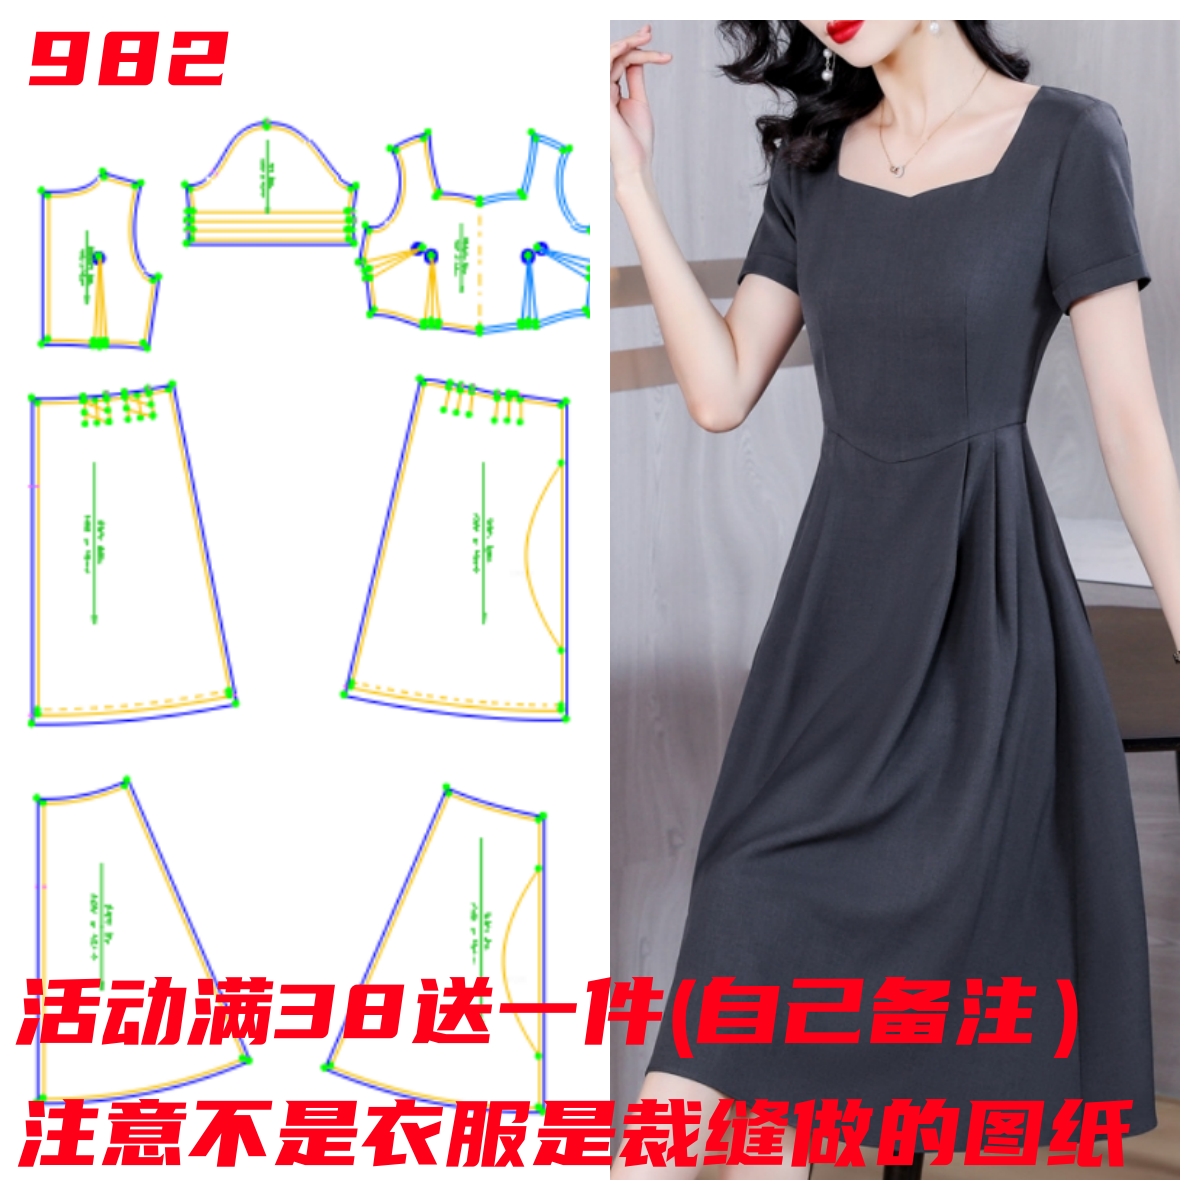 服装裁剪图982款气质方领收腰短袖连衣裙纸样缝纫设计1:1样板图